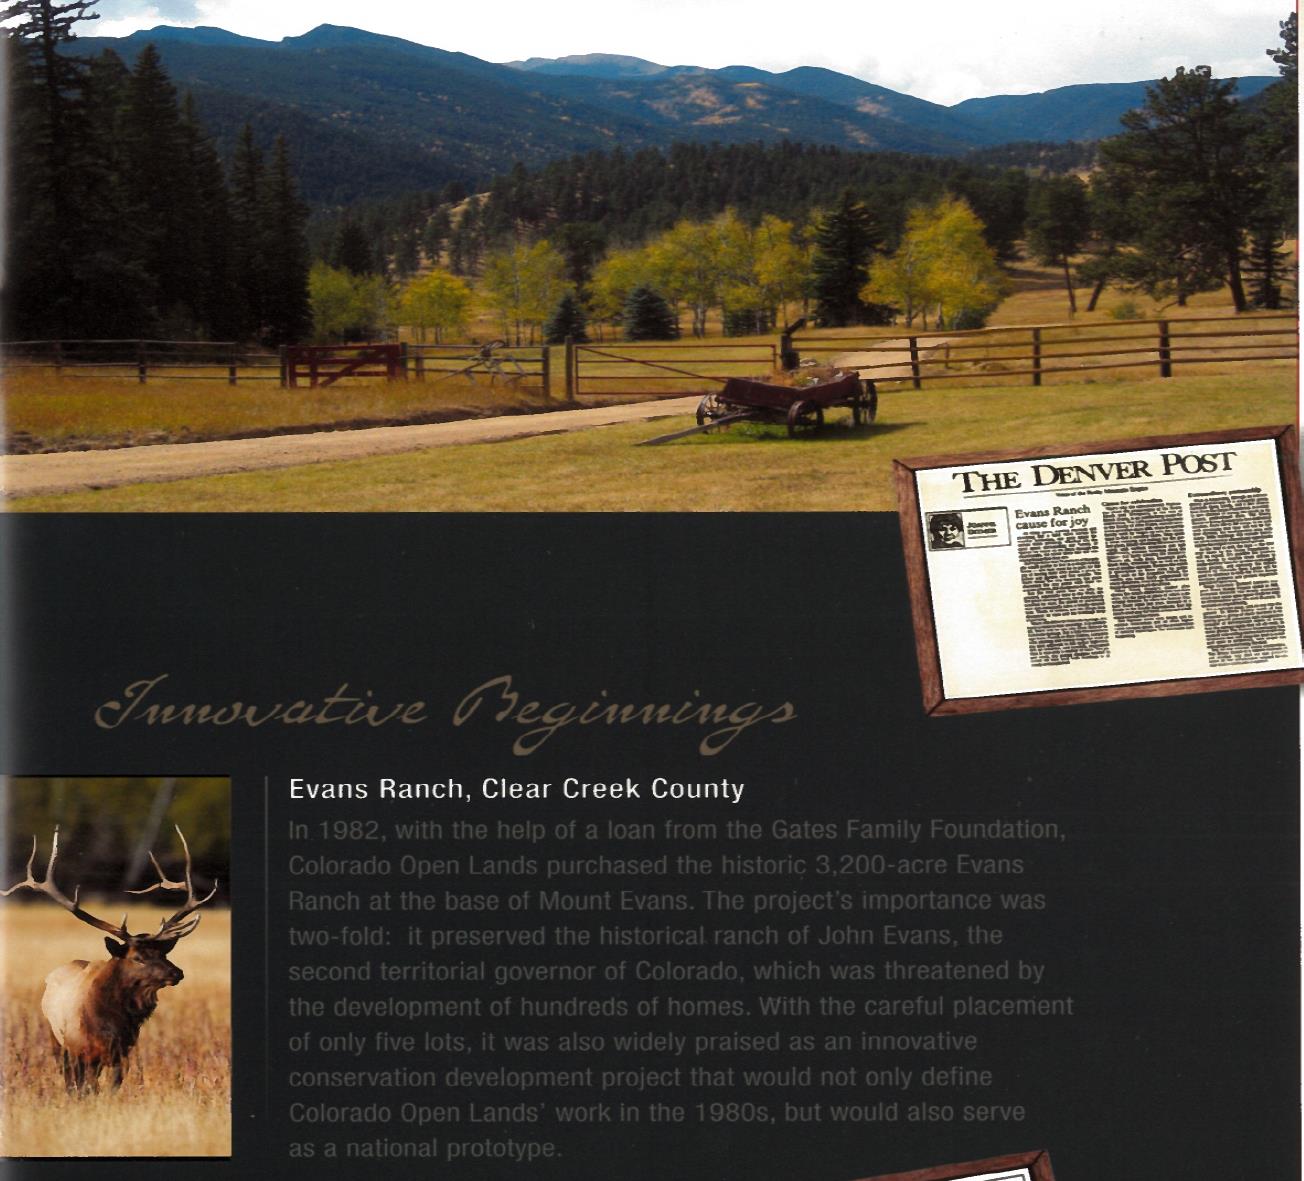 Evans Ranch, Colorado Open Lands